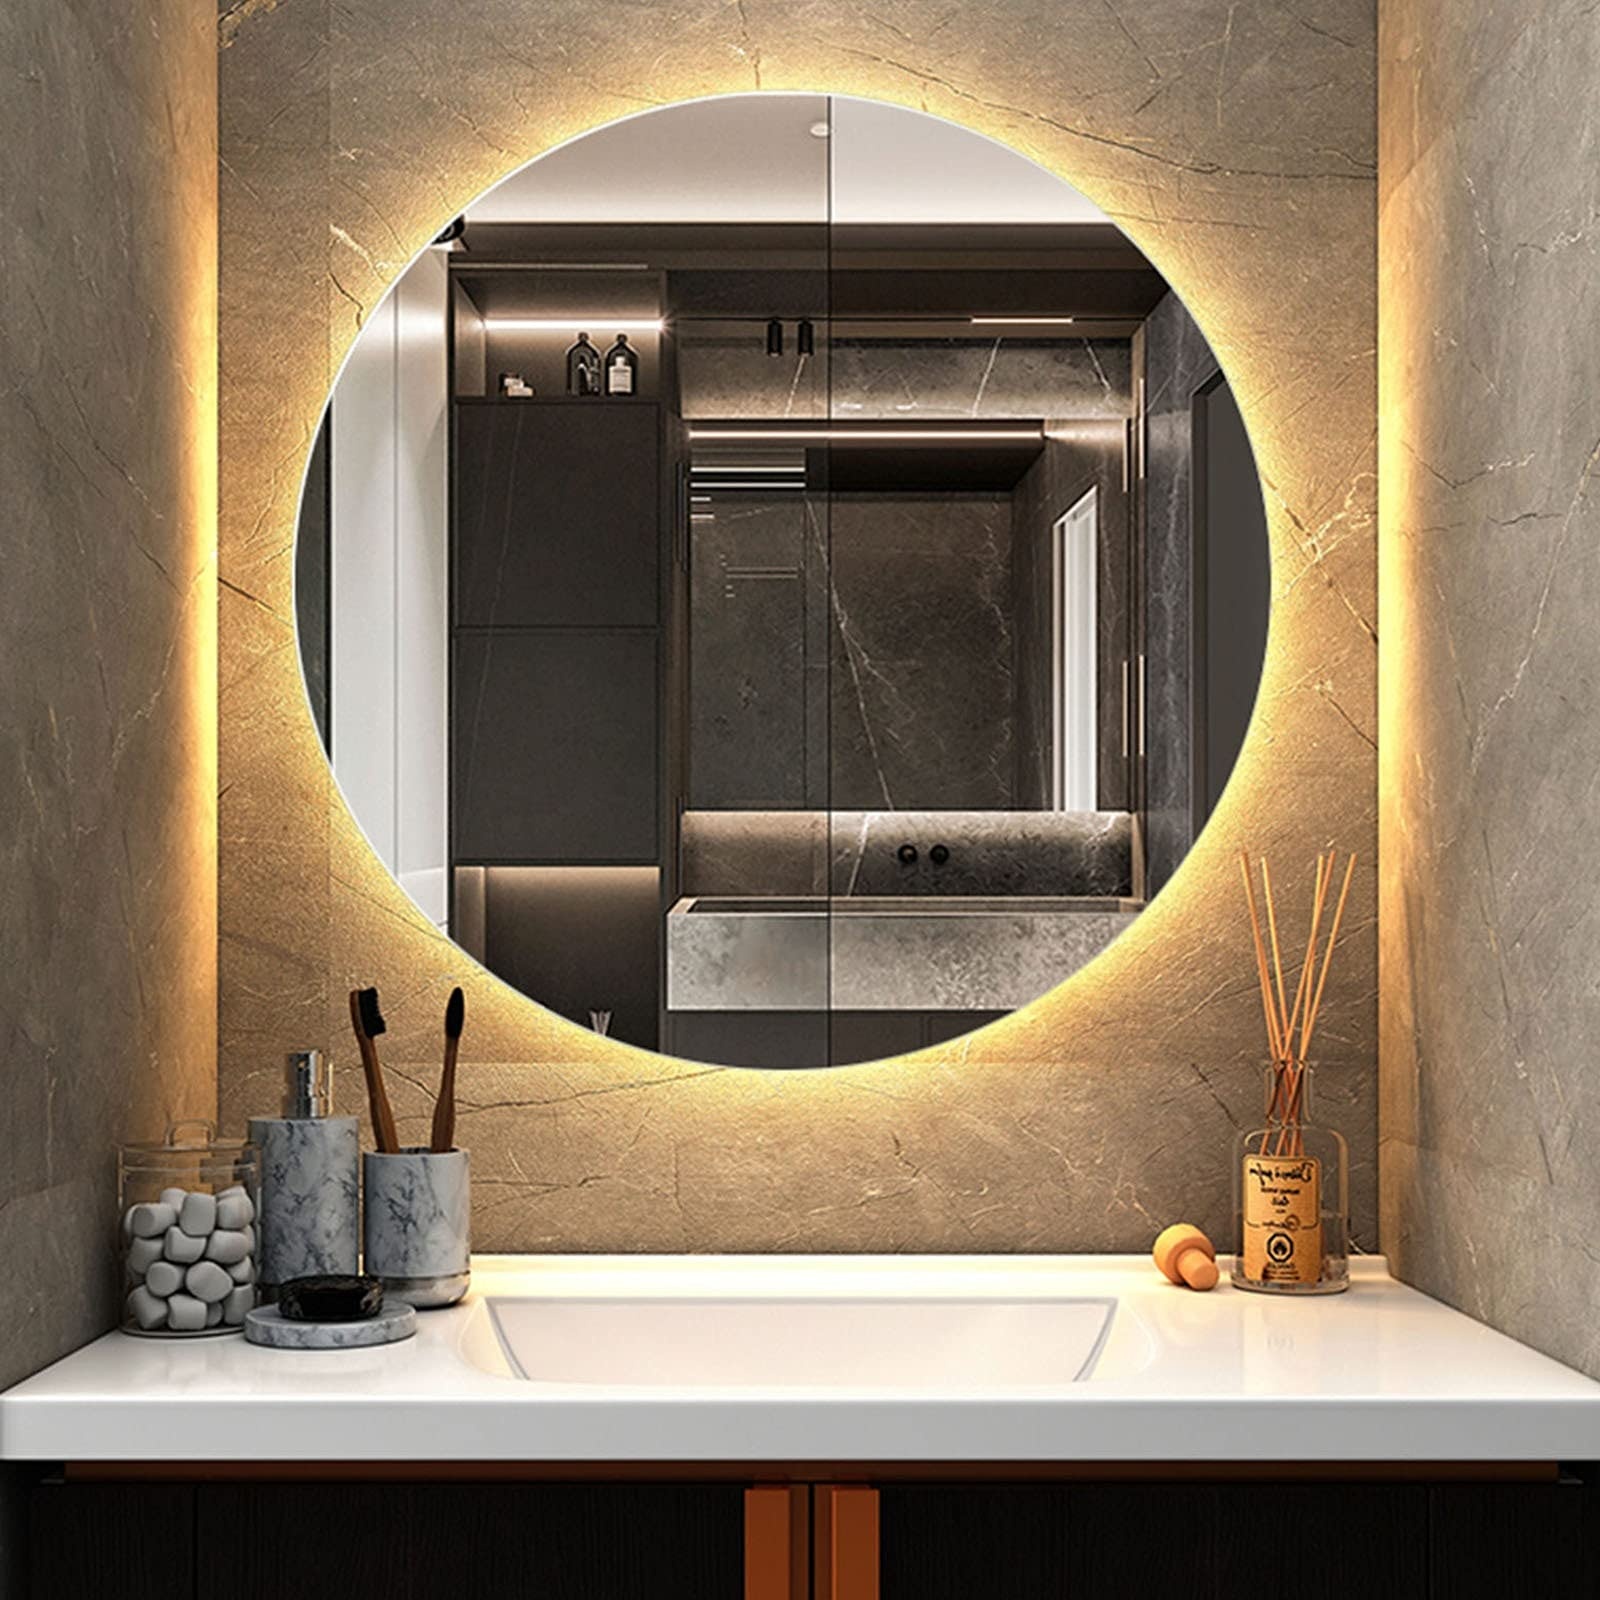 Bathroom mirror Spiegel Mit Hintergrundbeleuchtung, Runder Kosmetikspiegel Mit Lichtern, LED-beleuchteter IP64 Wasserdichter Badezimmerspiegel, Wandspiegel (Color : Warm Light 3200k, Size : 80x80cm)